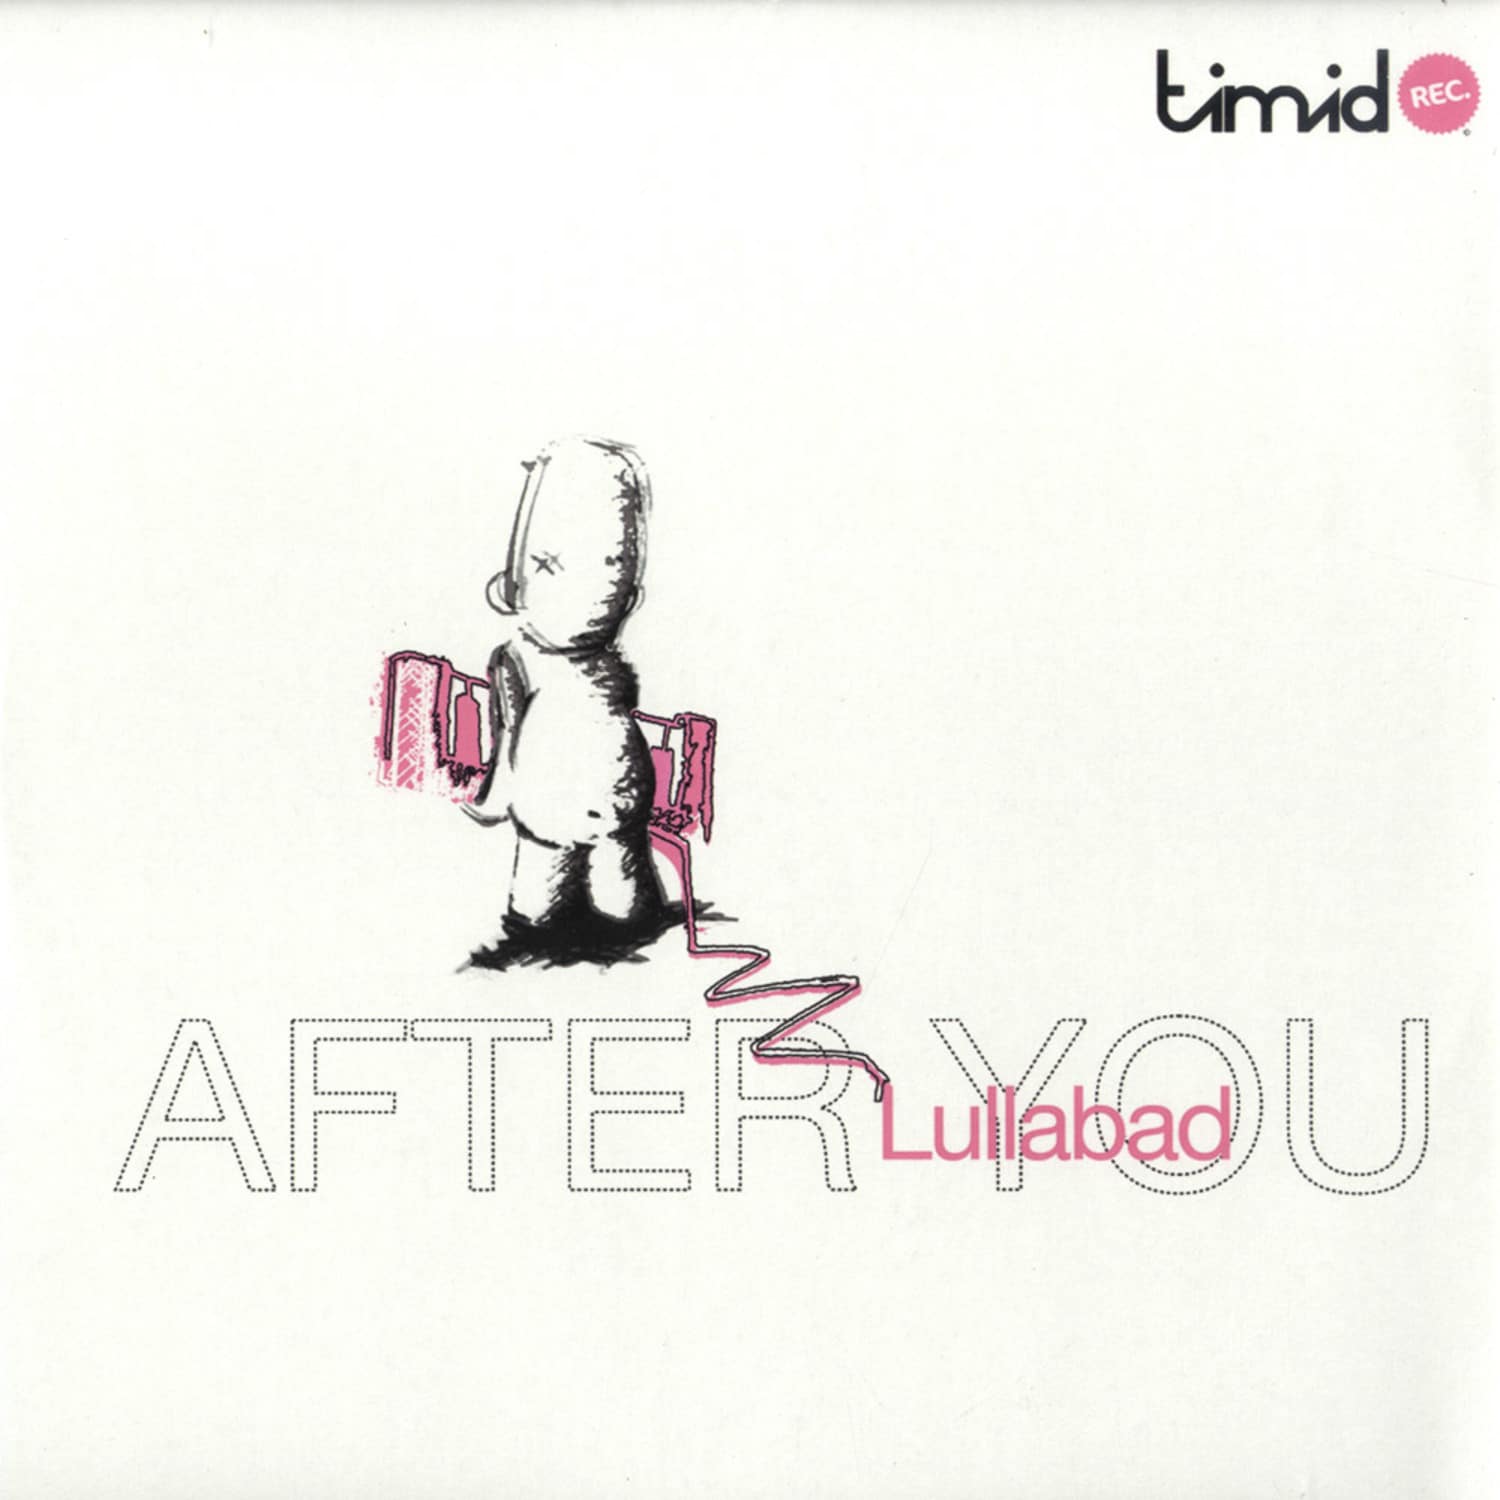 Lullabad - AFTER YOU